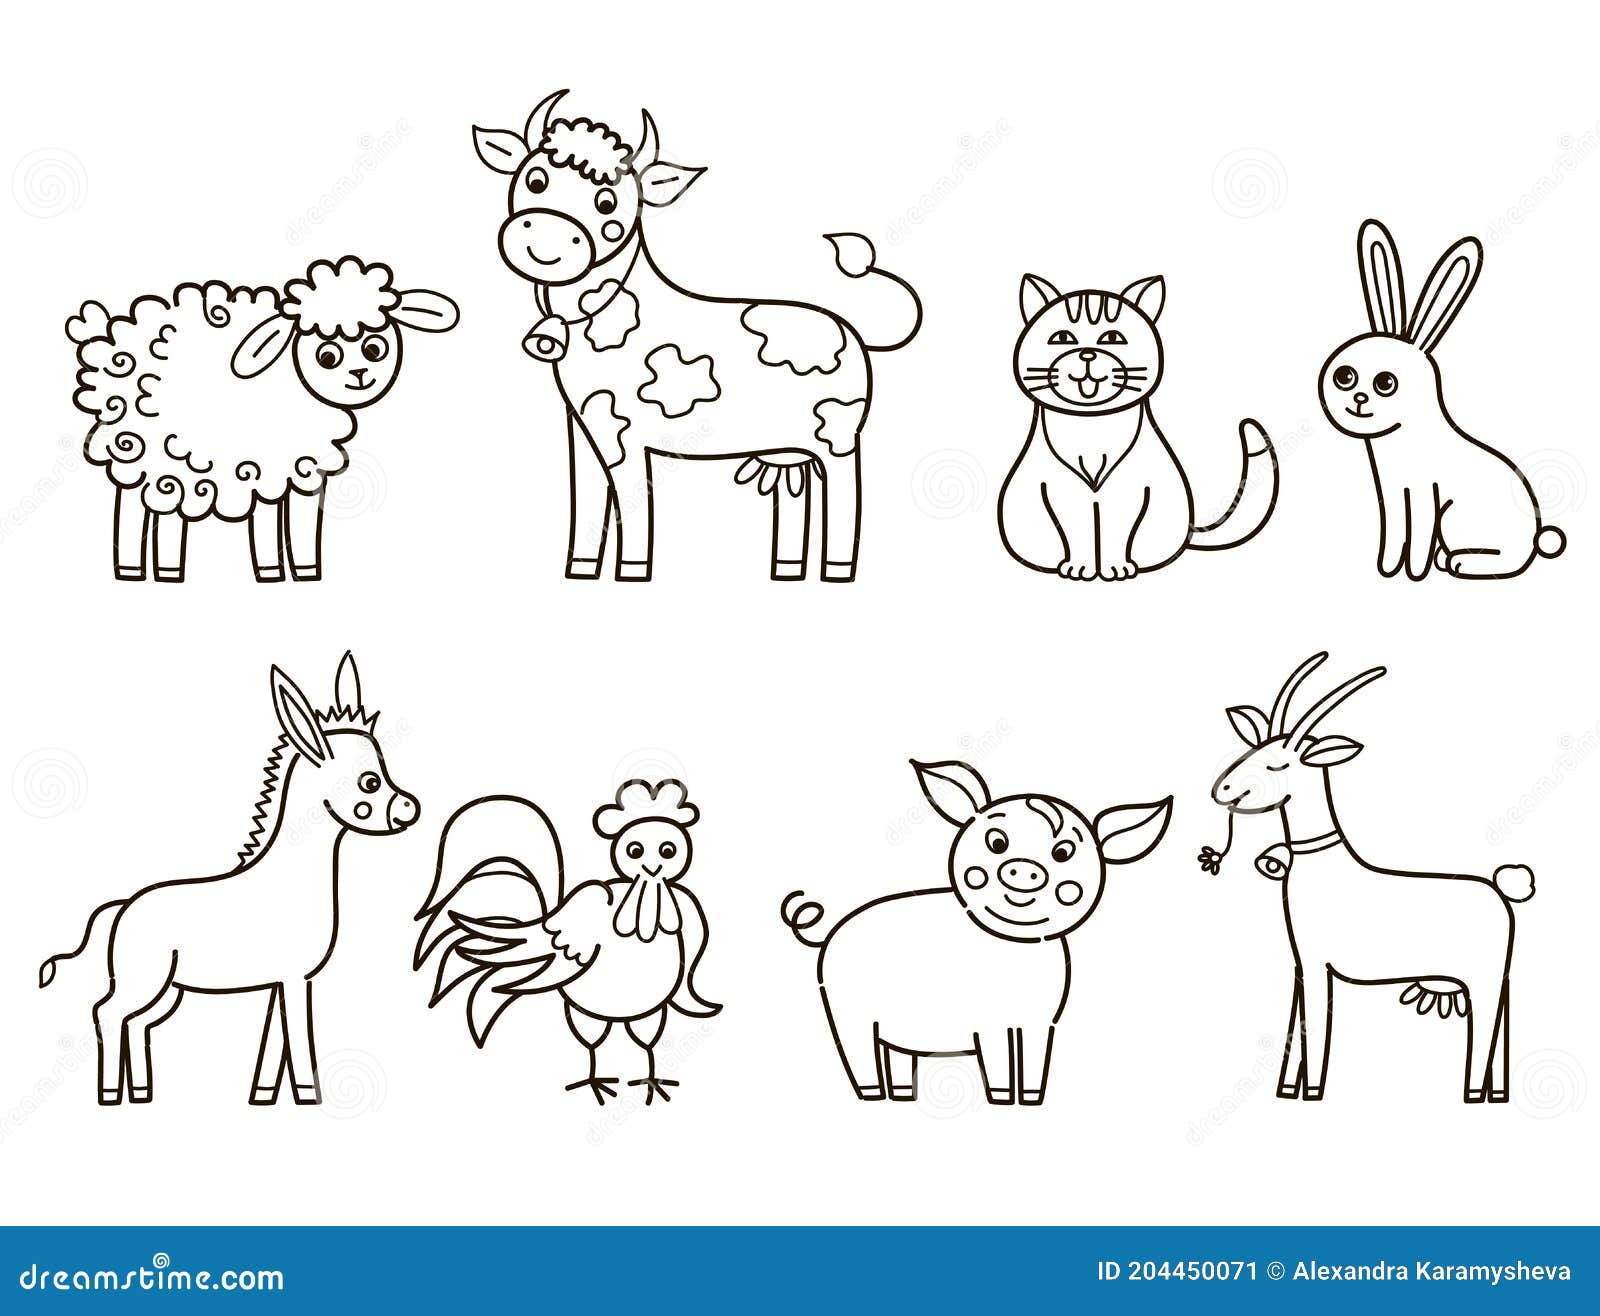 Colección De Dibujos Animados De Animales Domésticos En El Libro De  Colorear El Fondo Blanco Stock de ilustración - Ilustración de poultry,  doméstico: 204450071